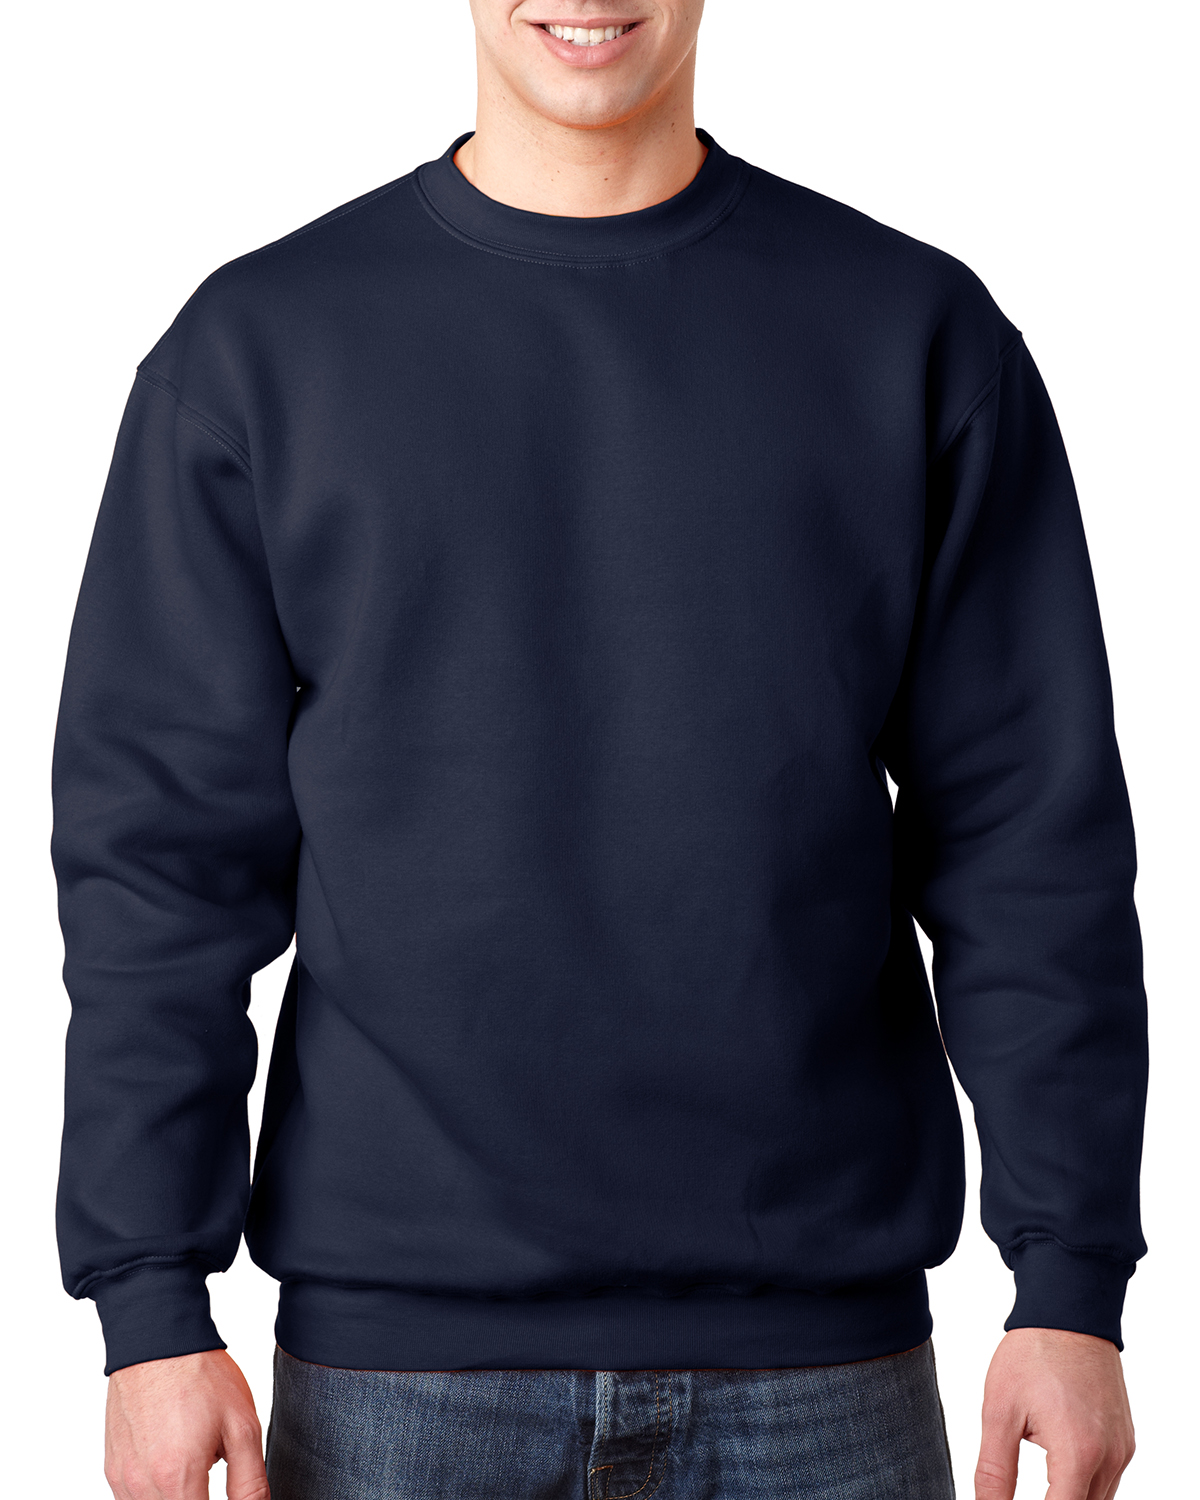 Bayside BA1102 - Adult Crewneck Sweatshirt